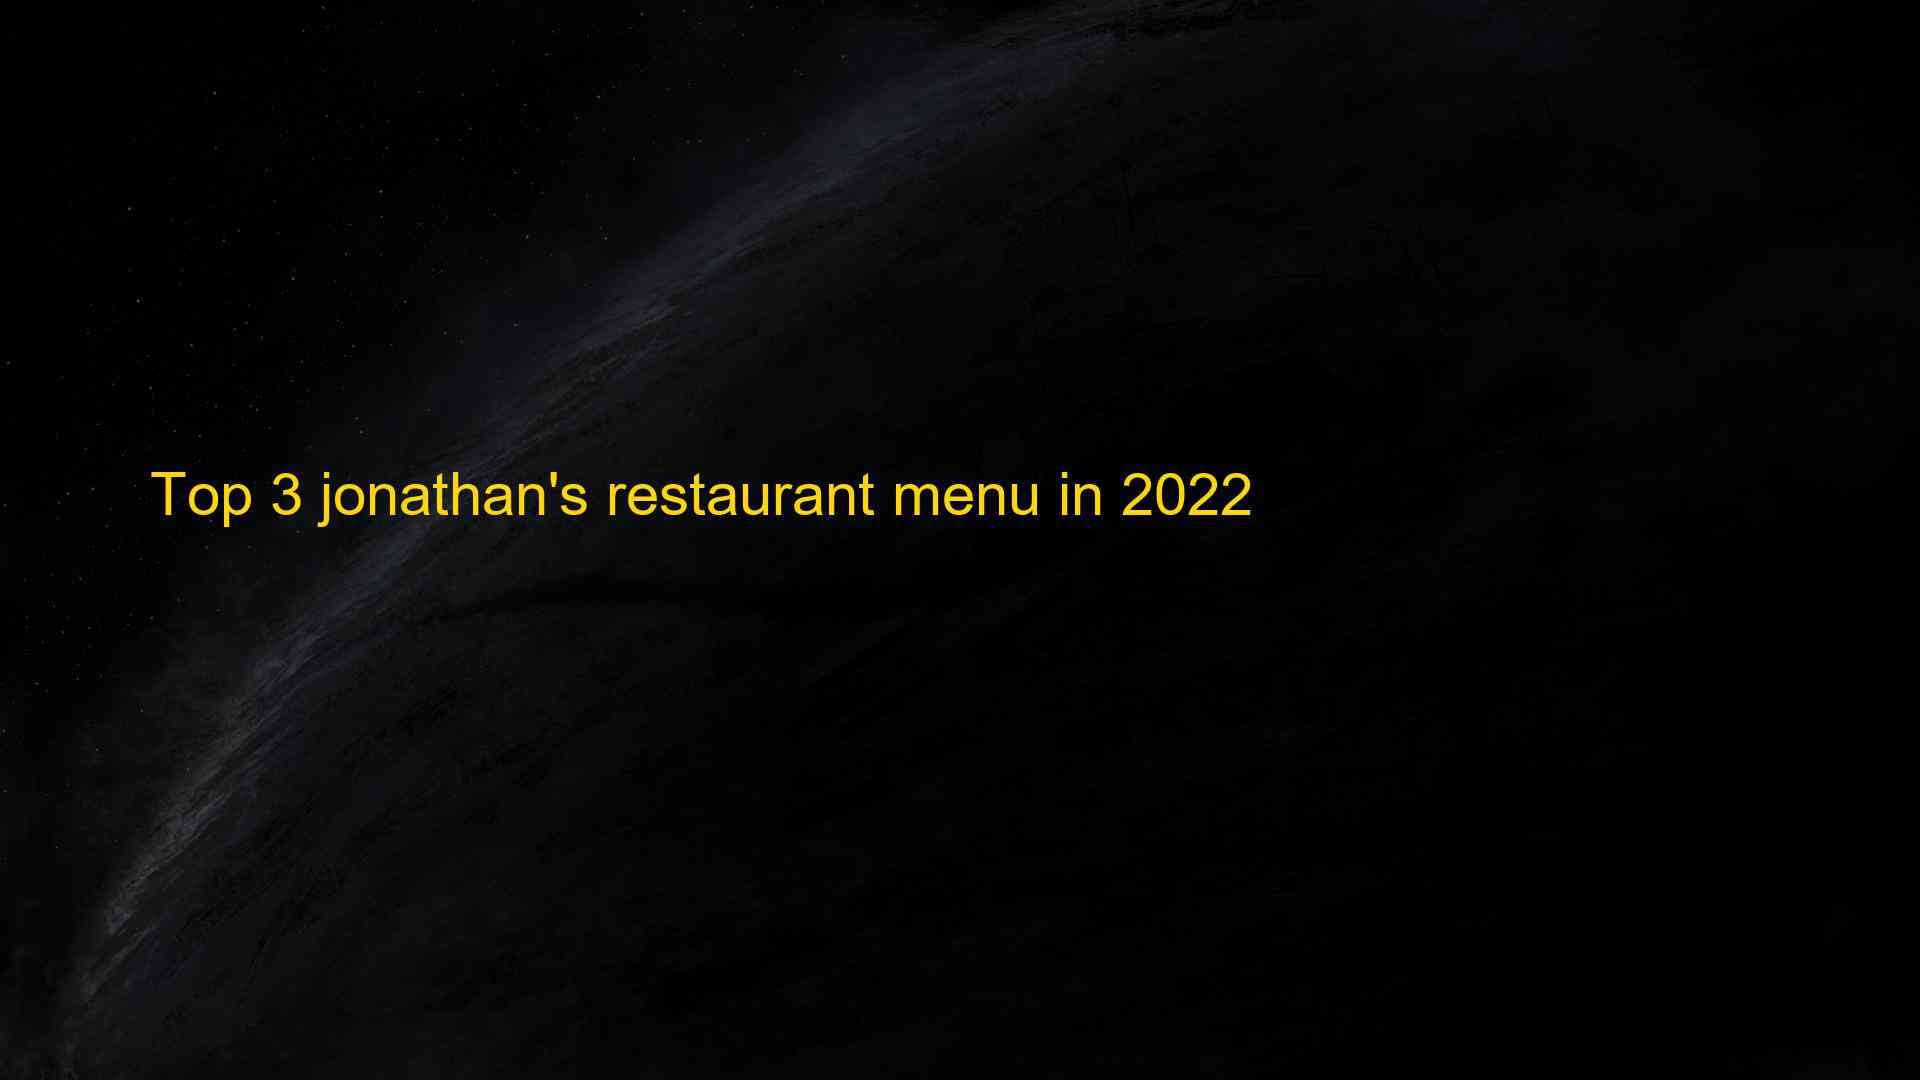 Top 3 jonathans restaurant menu in 2022 1663535104